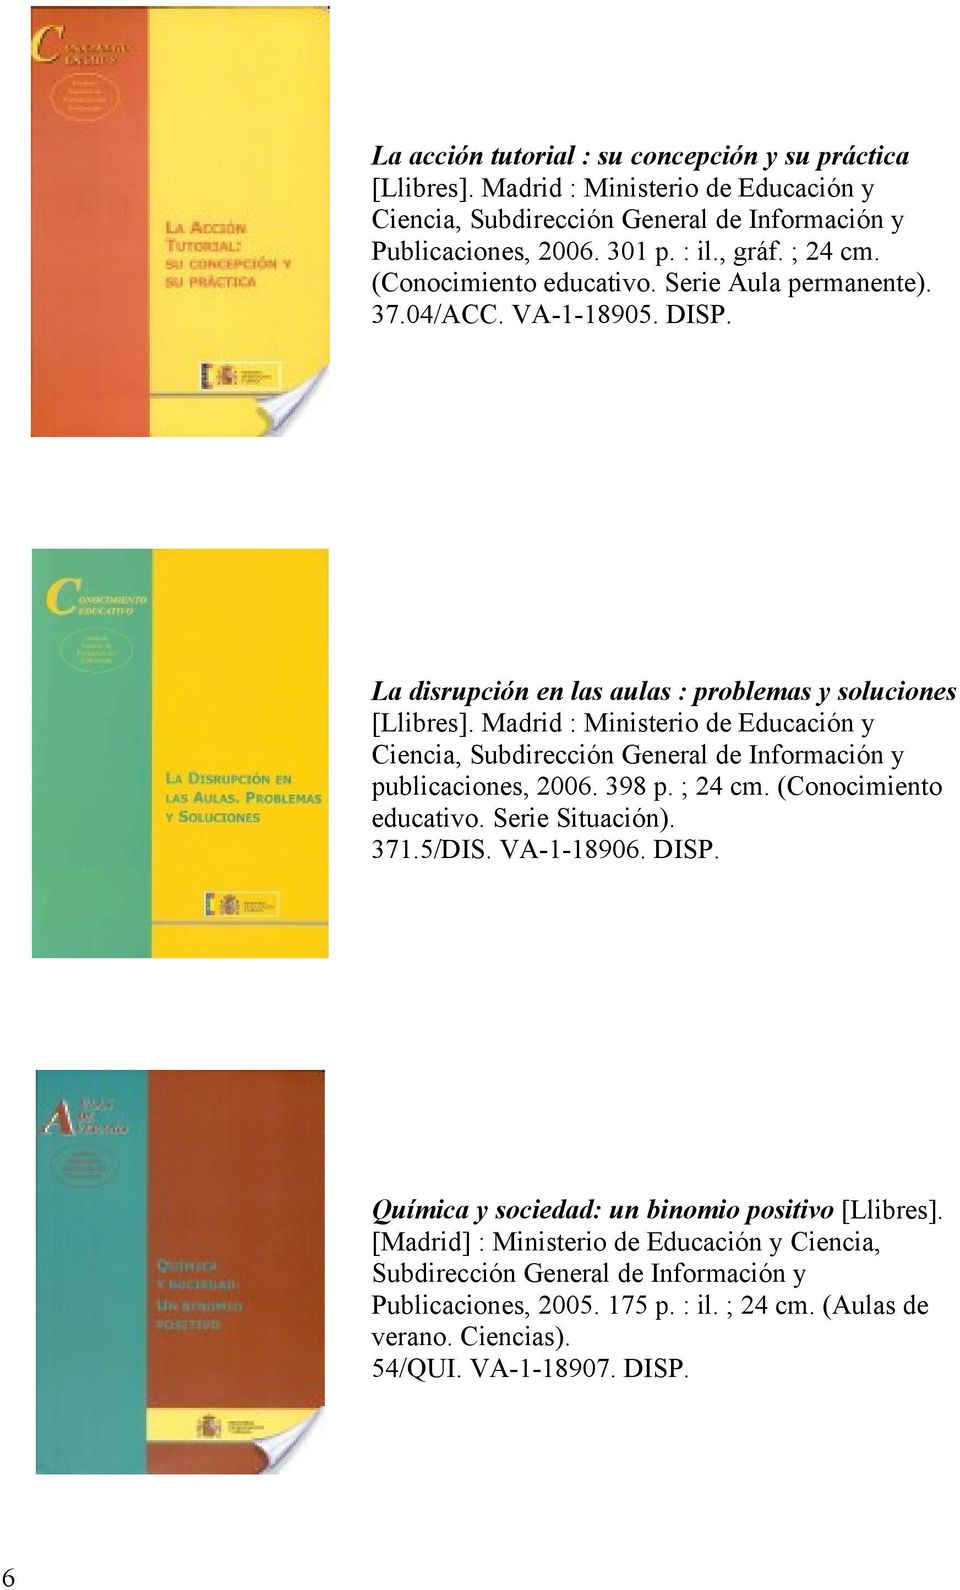 Madrid : Ministerio de Educación y Ciencia, Subdirección General de Información y publicaciones, 2006. 398 p. ; 24 cm. (Conocimiento educativo. Serie Situación). 371.5/DIS. VA-1-18906. DISP.